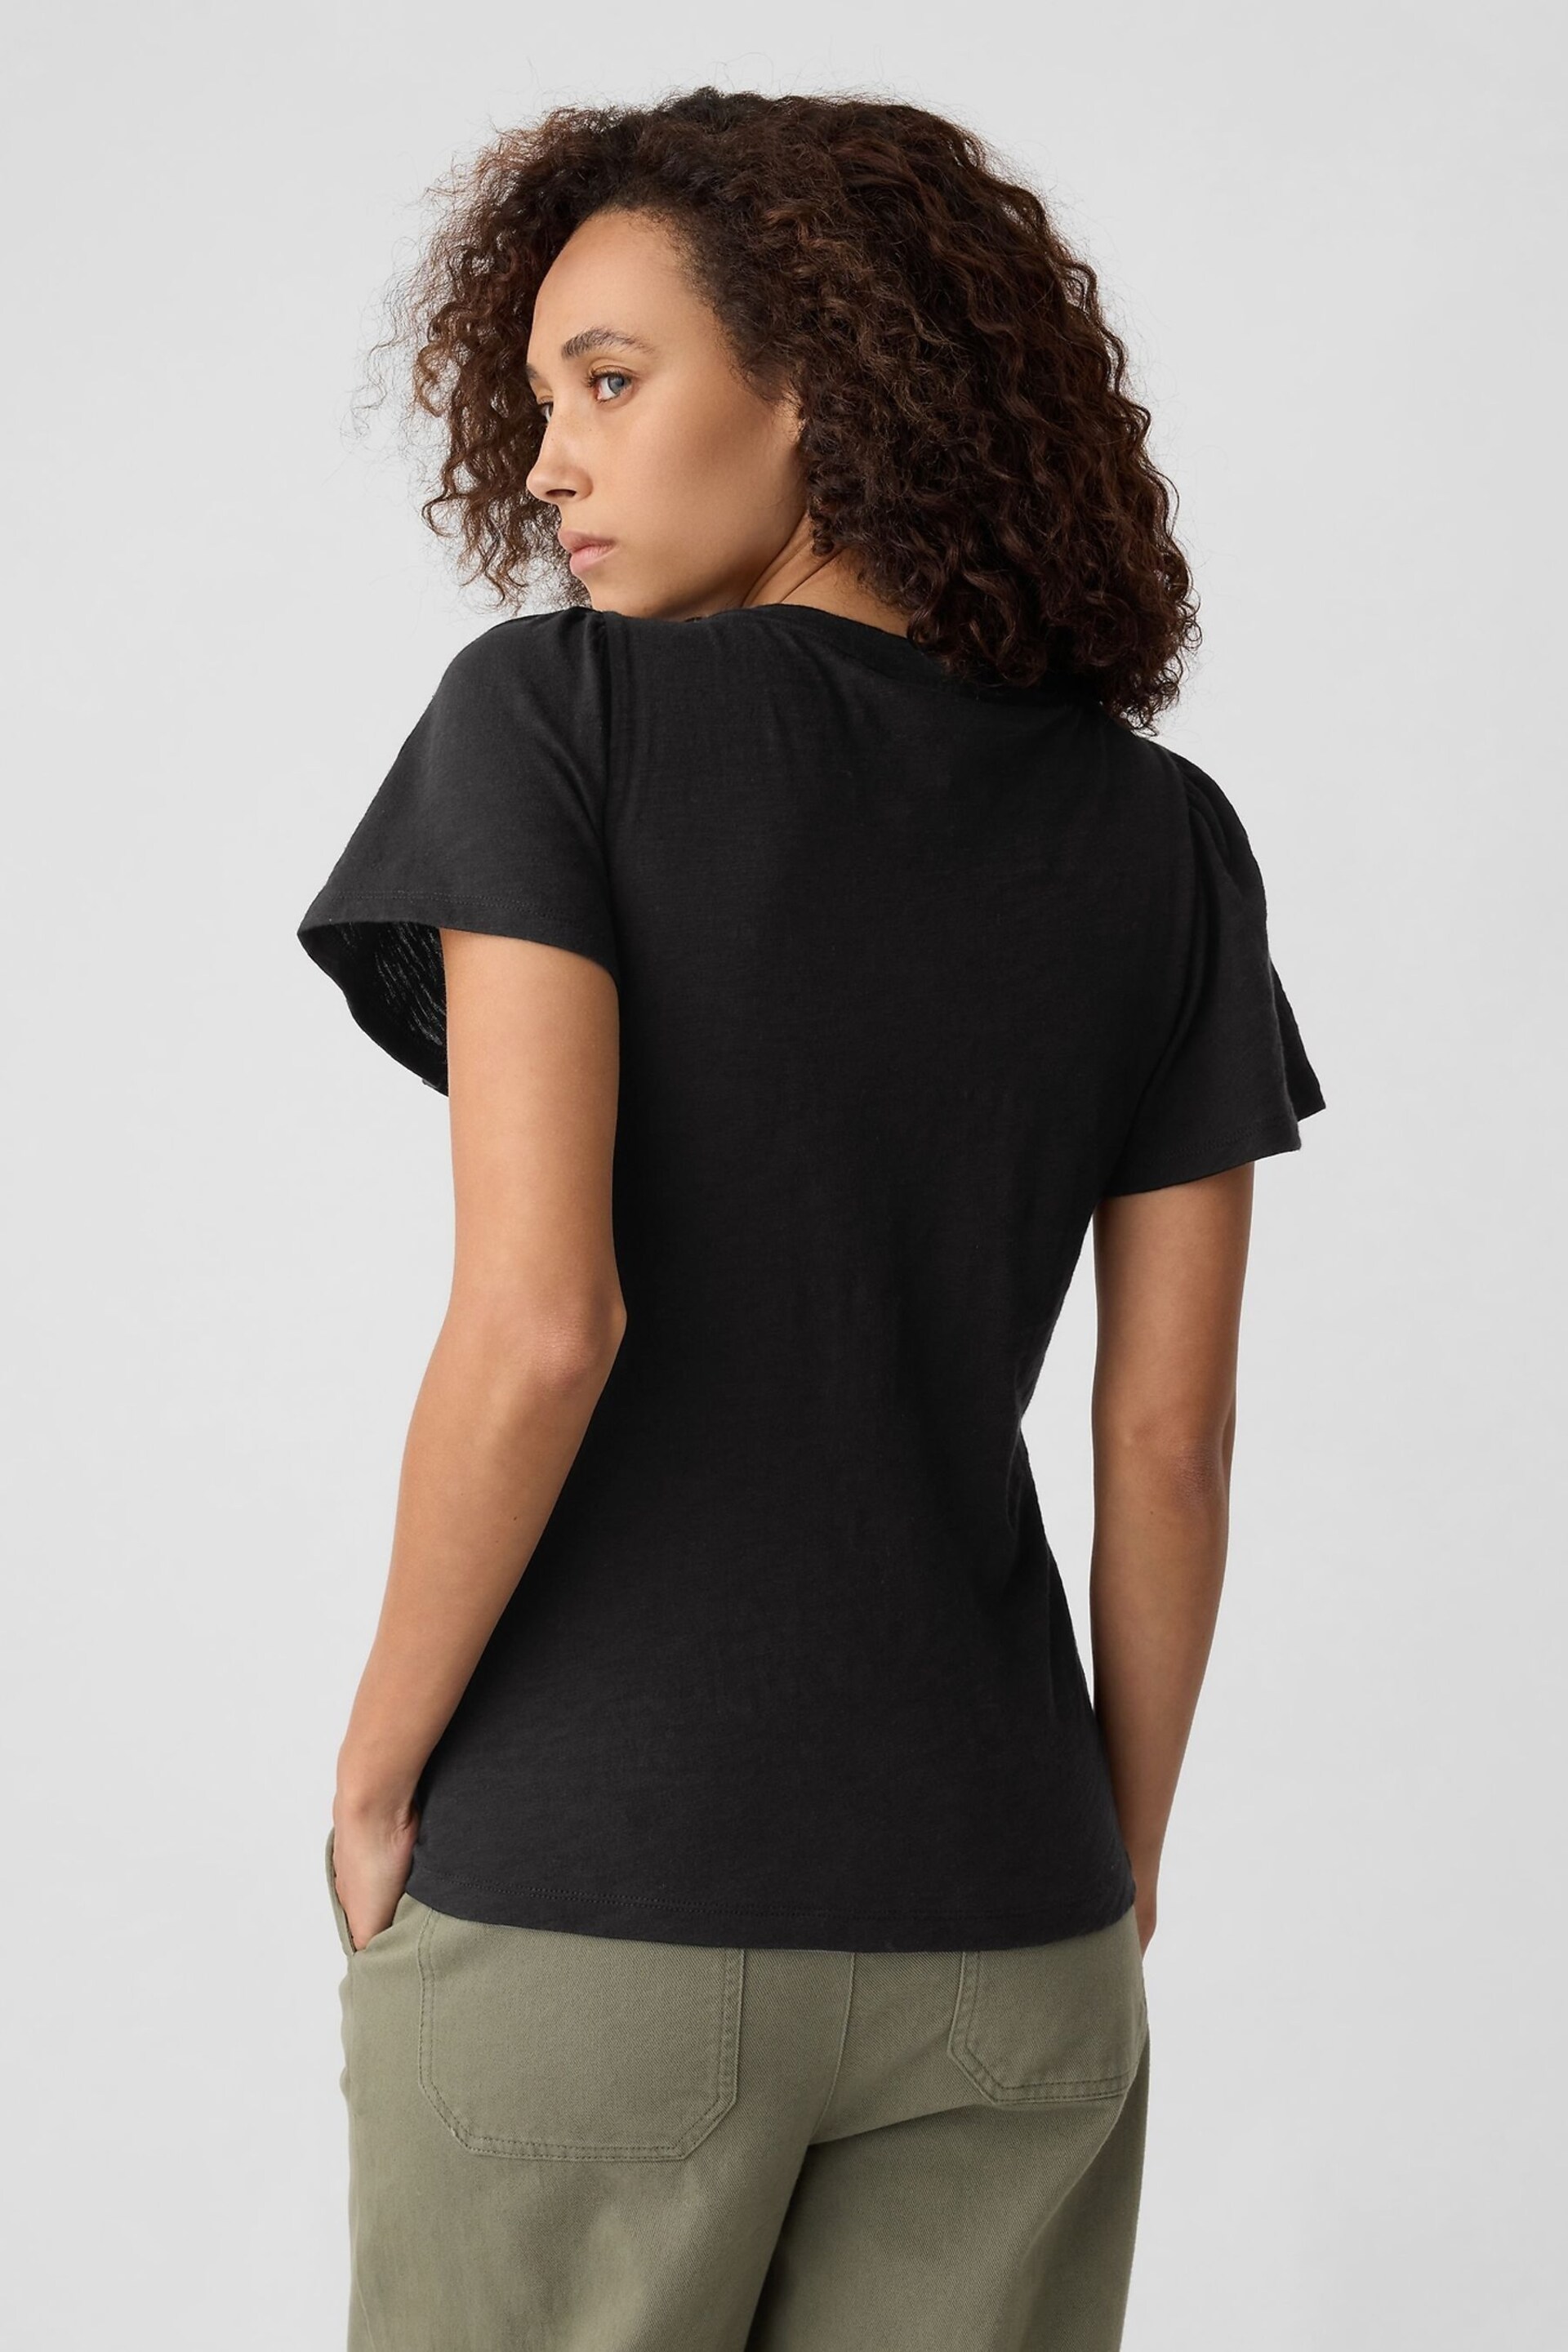 Gap Black ForeverSoft Slub Short Sleeve T-Shirt - Image 2 of 5